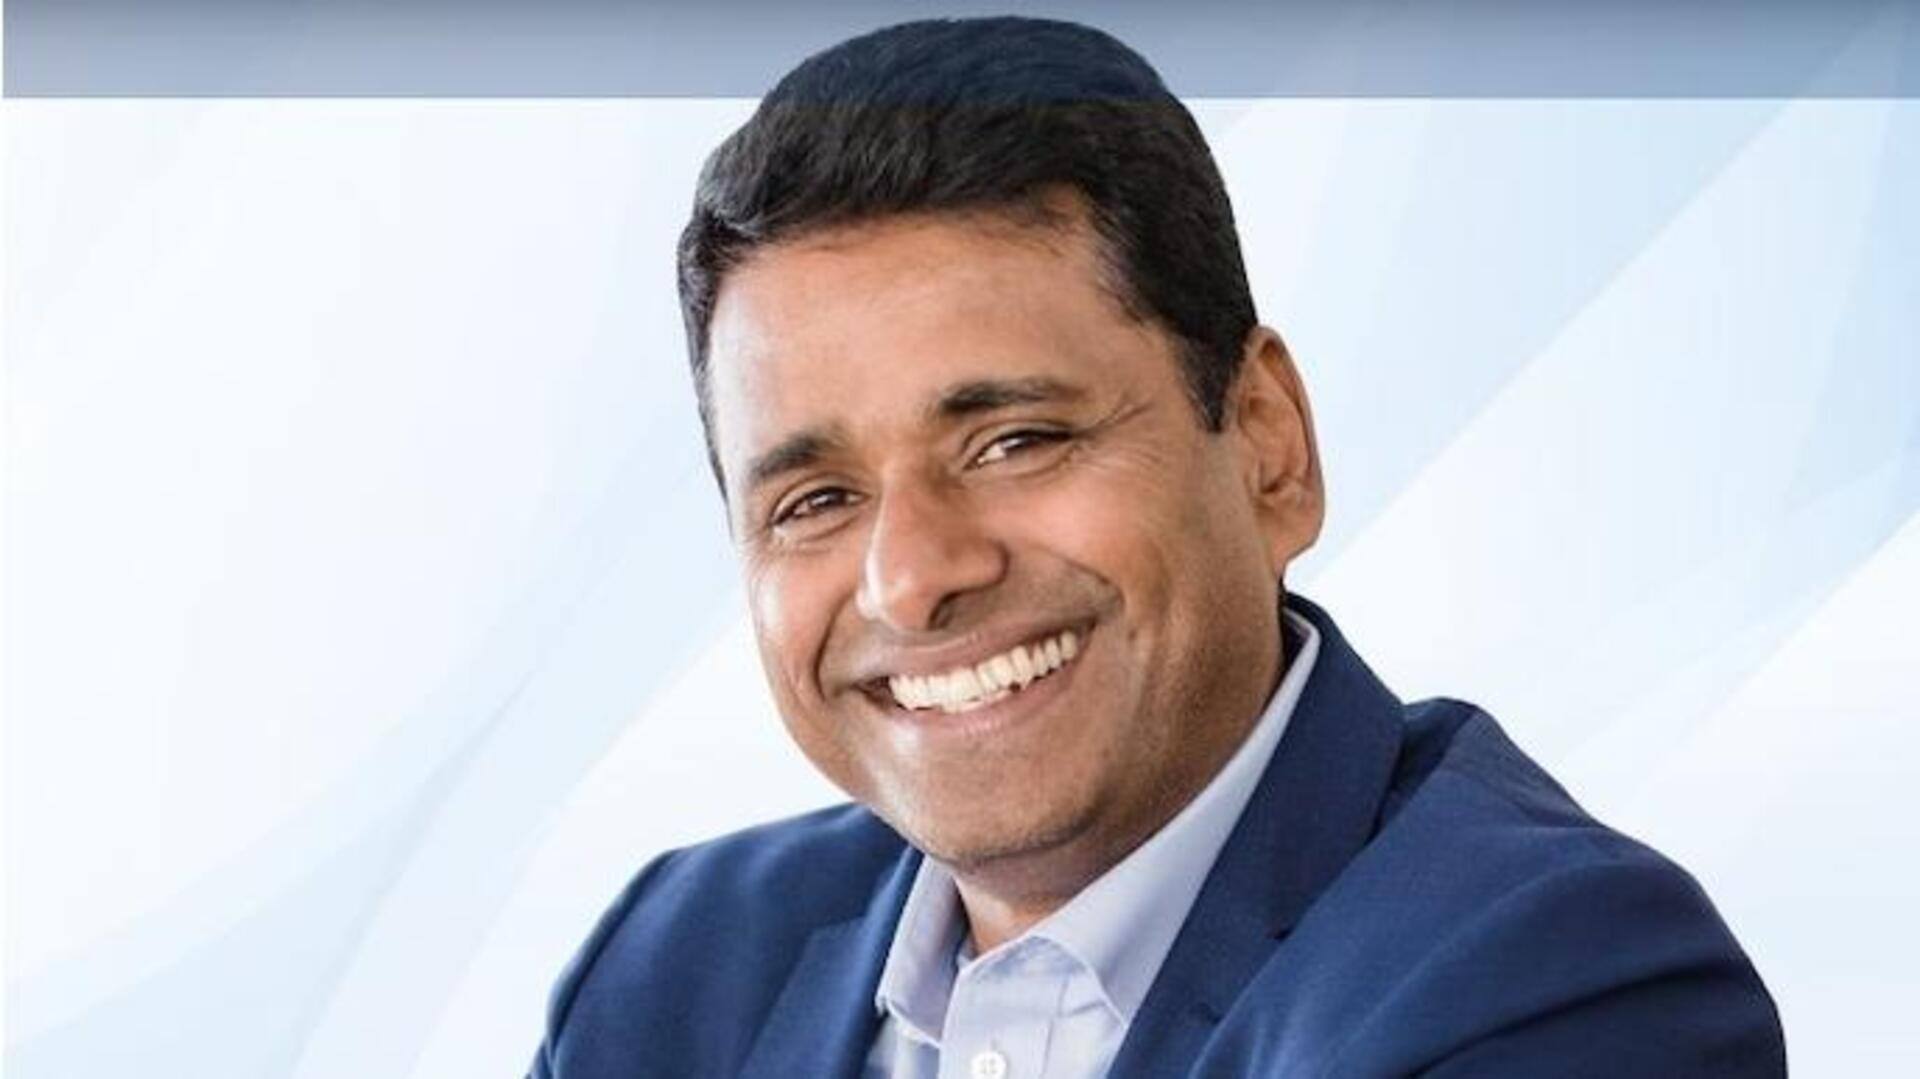 Wipro New CEO and MD: విప్రోకు కొత్త సీఈఓగా శ్రీనివాస్ పల్లియా